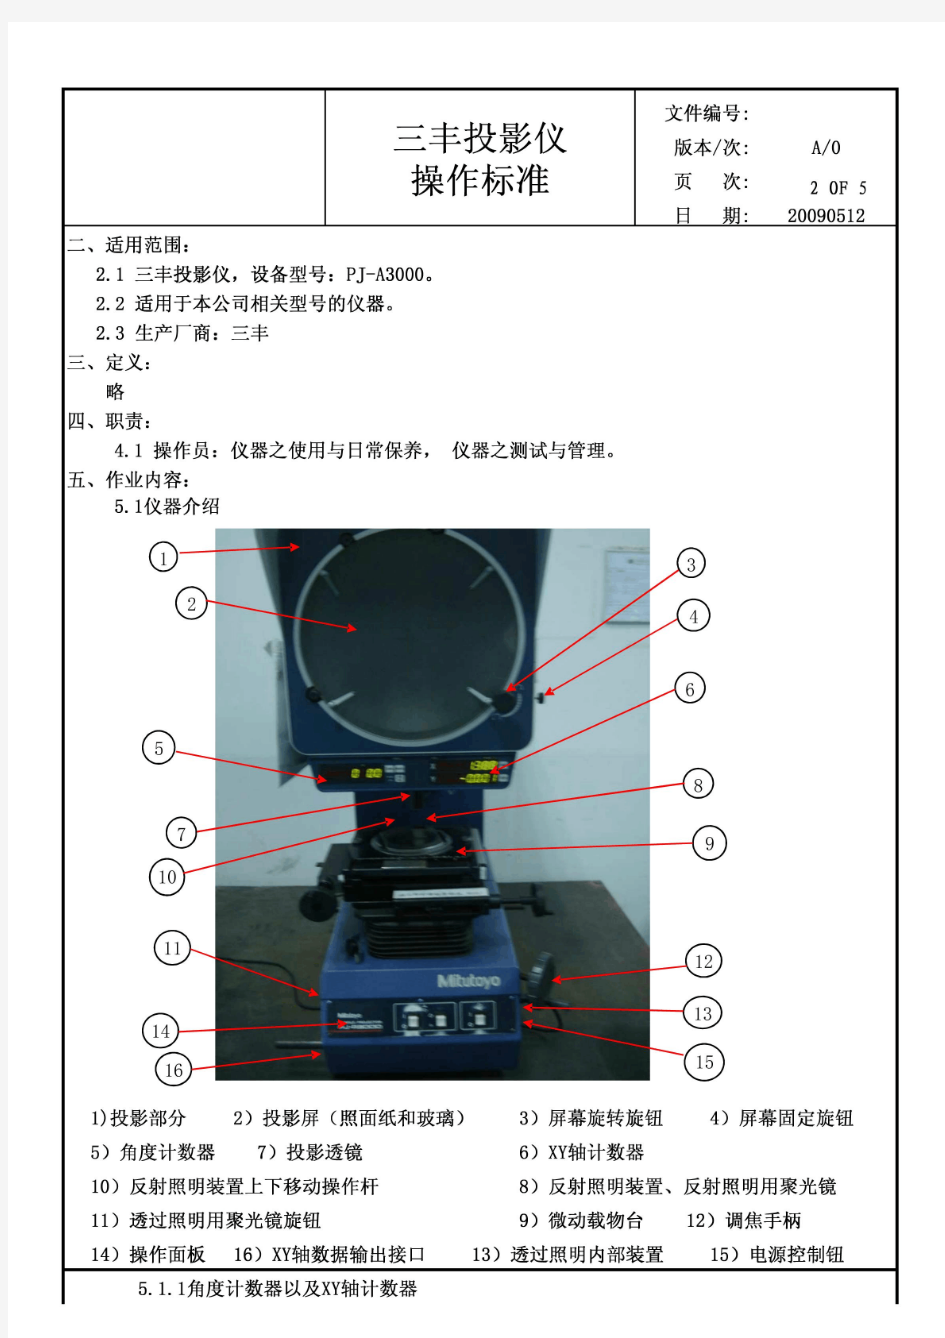 三丰-密测多友-Mitutoyo投影仪PJ-3000操作标准  操作作业指导书